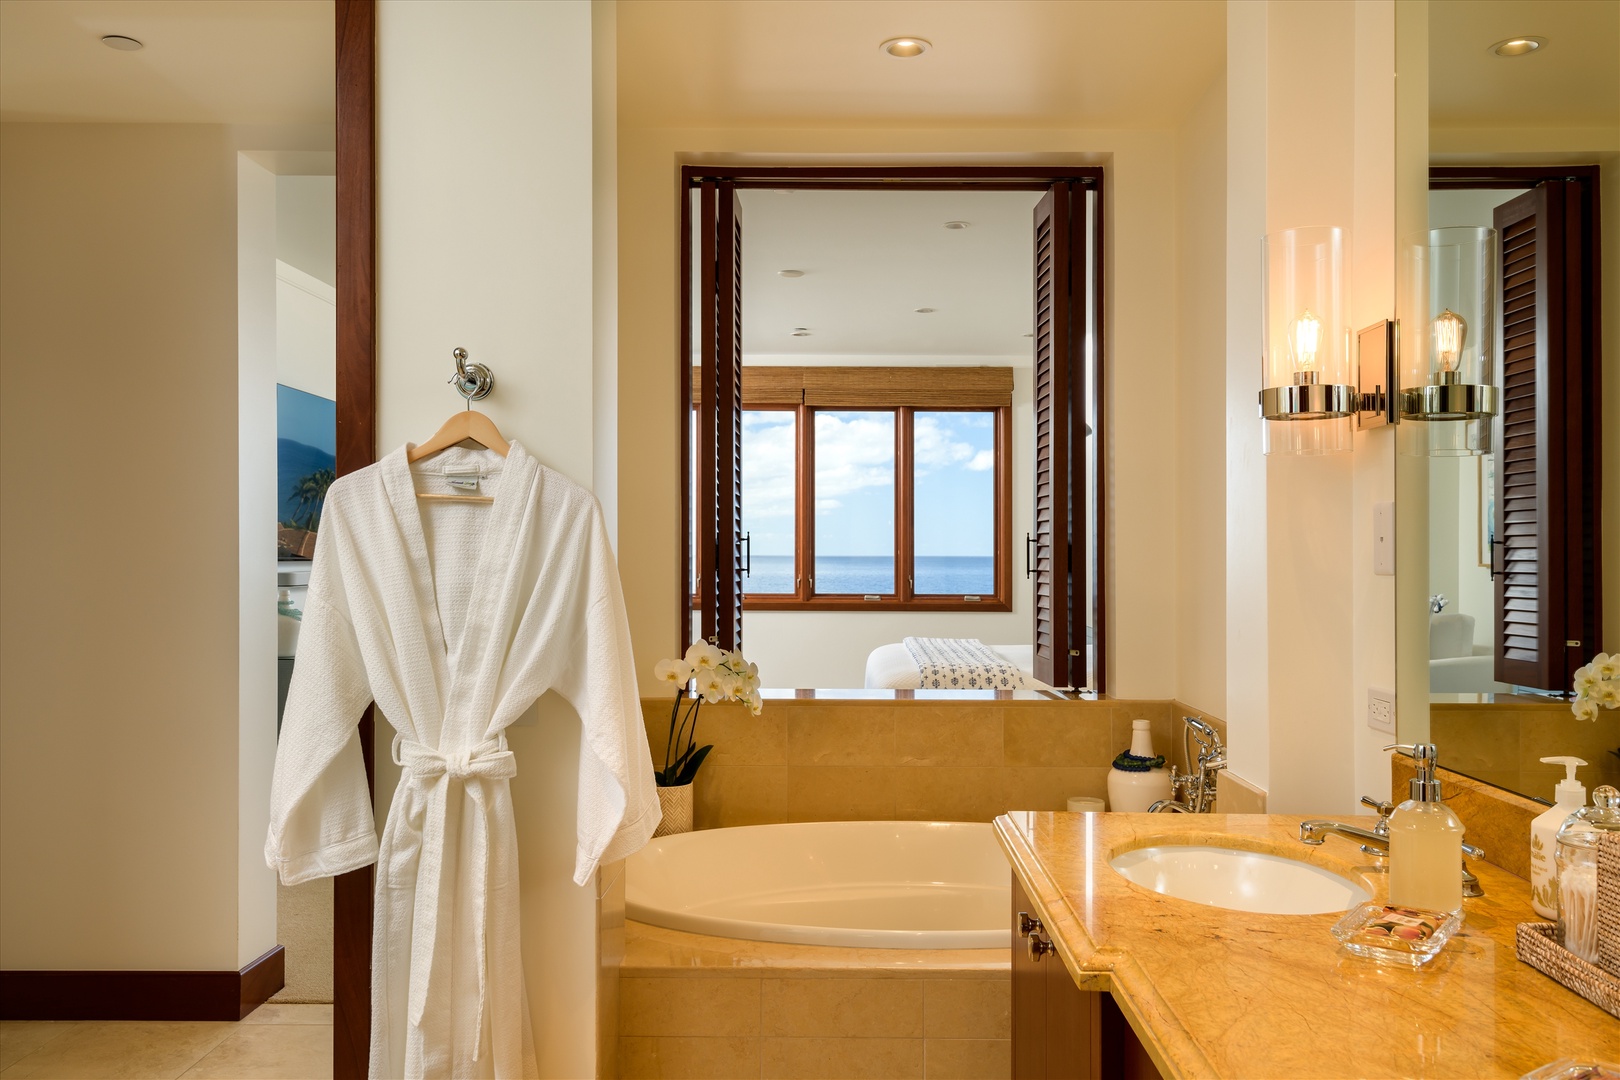 Wailea Vacation Rentals, Blue Ocean Suite H401 at Wailea Beach Villas* - Ocean View Master Bedroom Bathroom